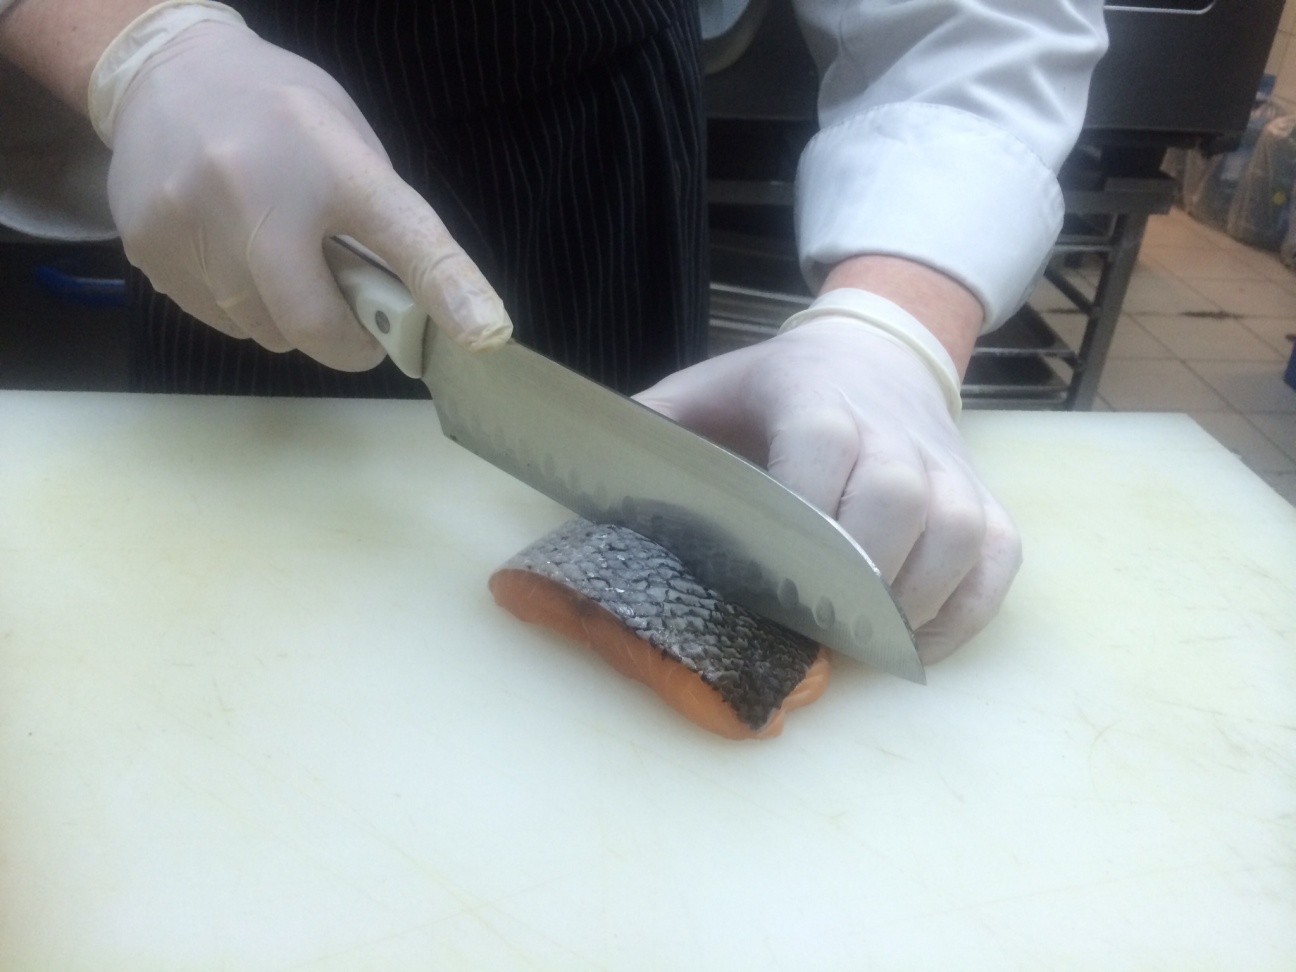 Лосось, приготовленный в пергаменте, от шеф-повара ресторана James Cook - фотография № 2